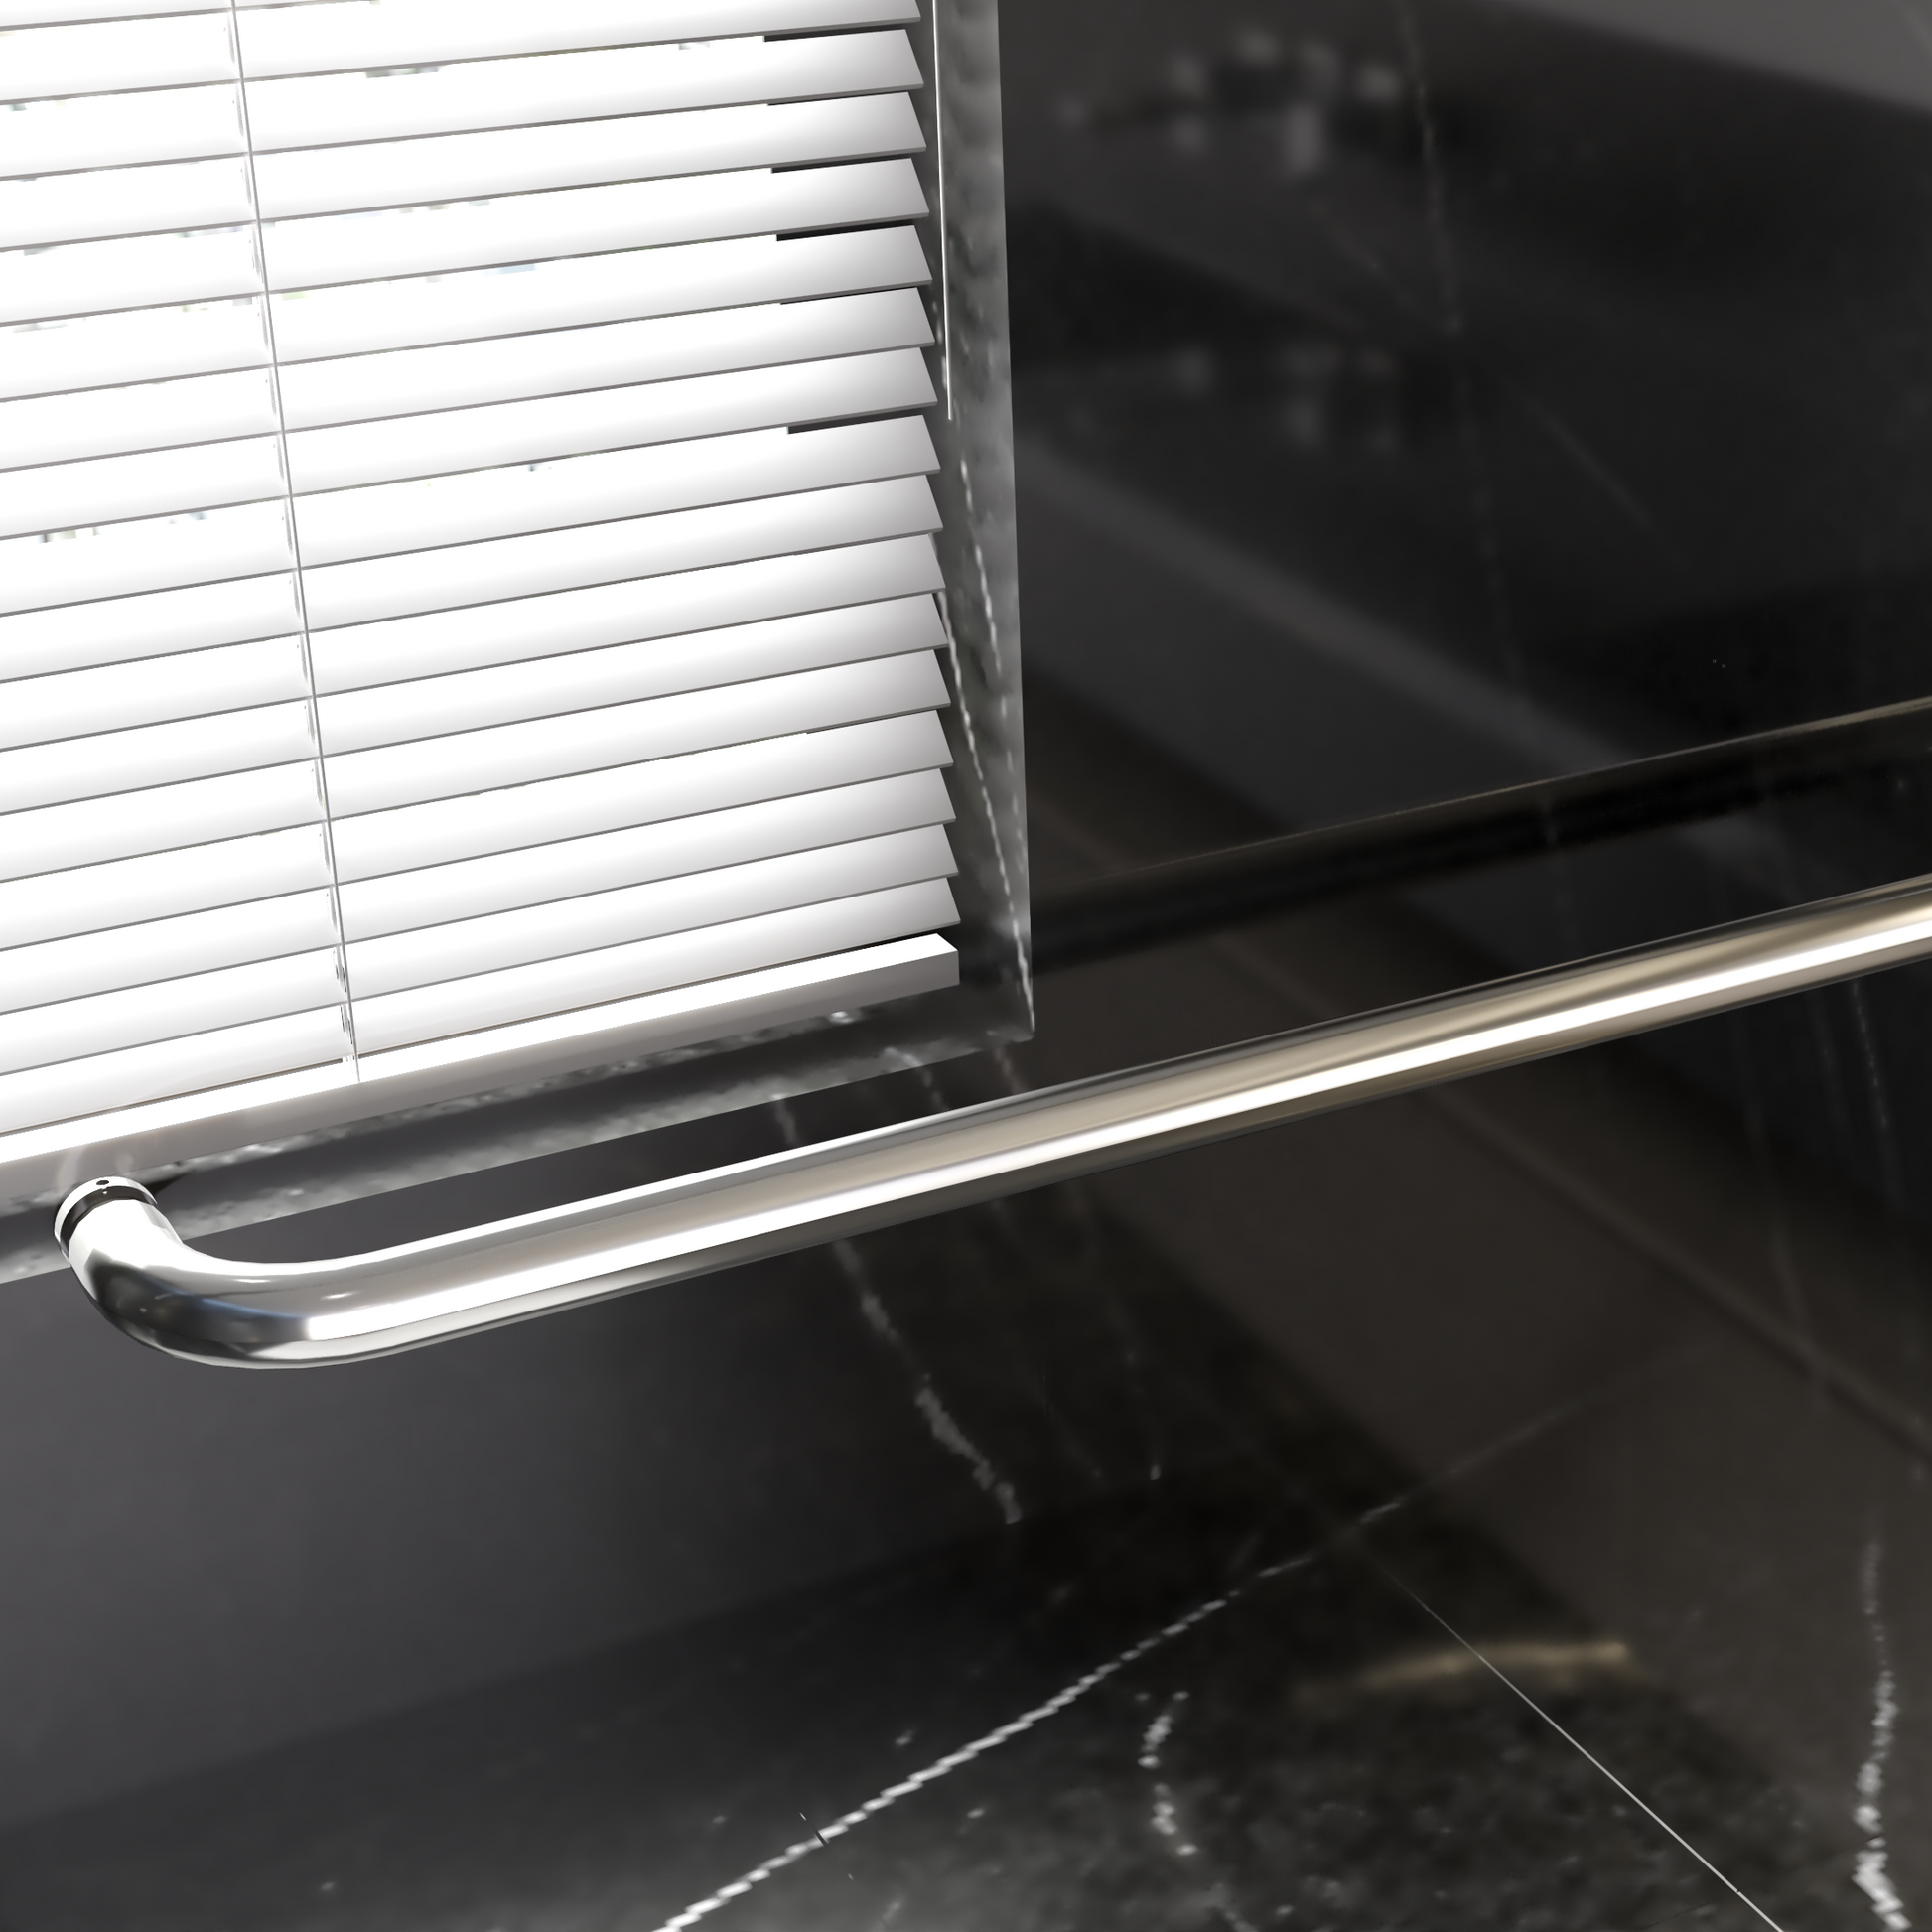 56" 60"W*70" H Semi Frameless Double Sliding Shower chrome-glass+metal